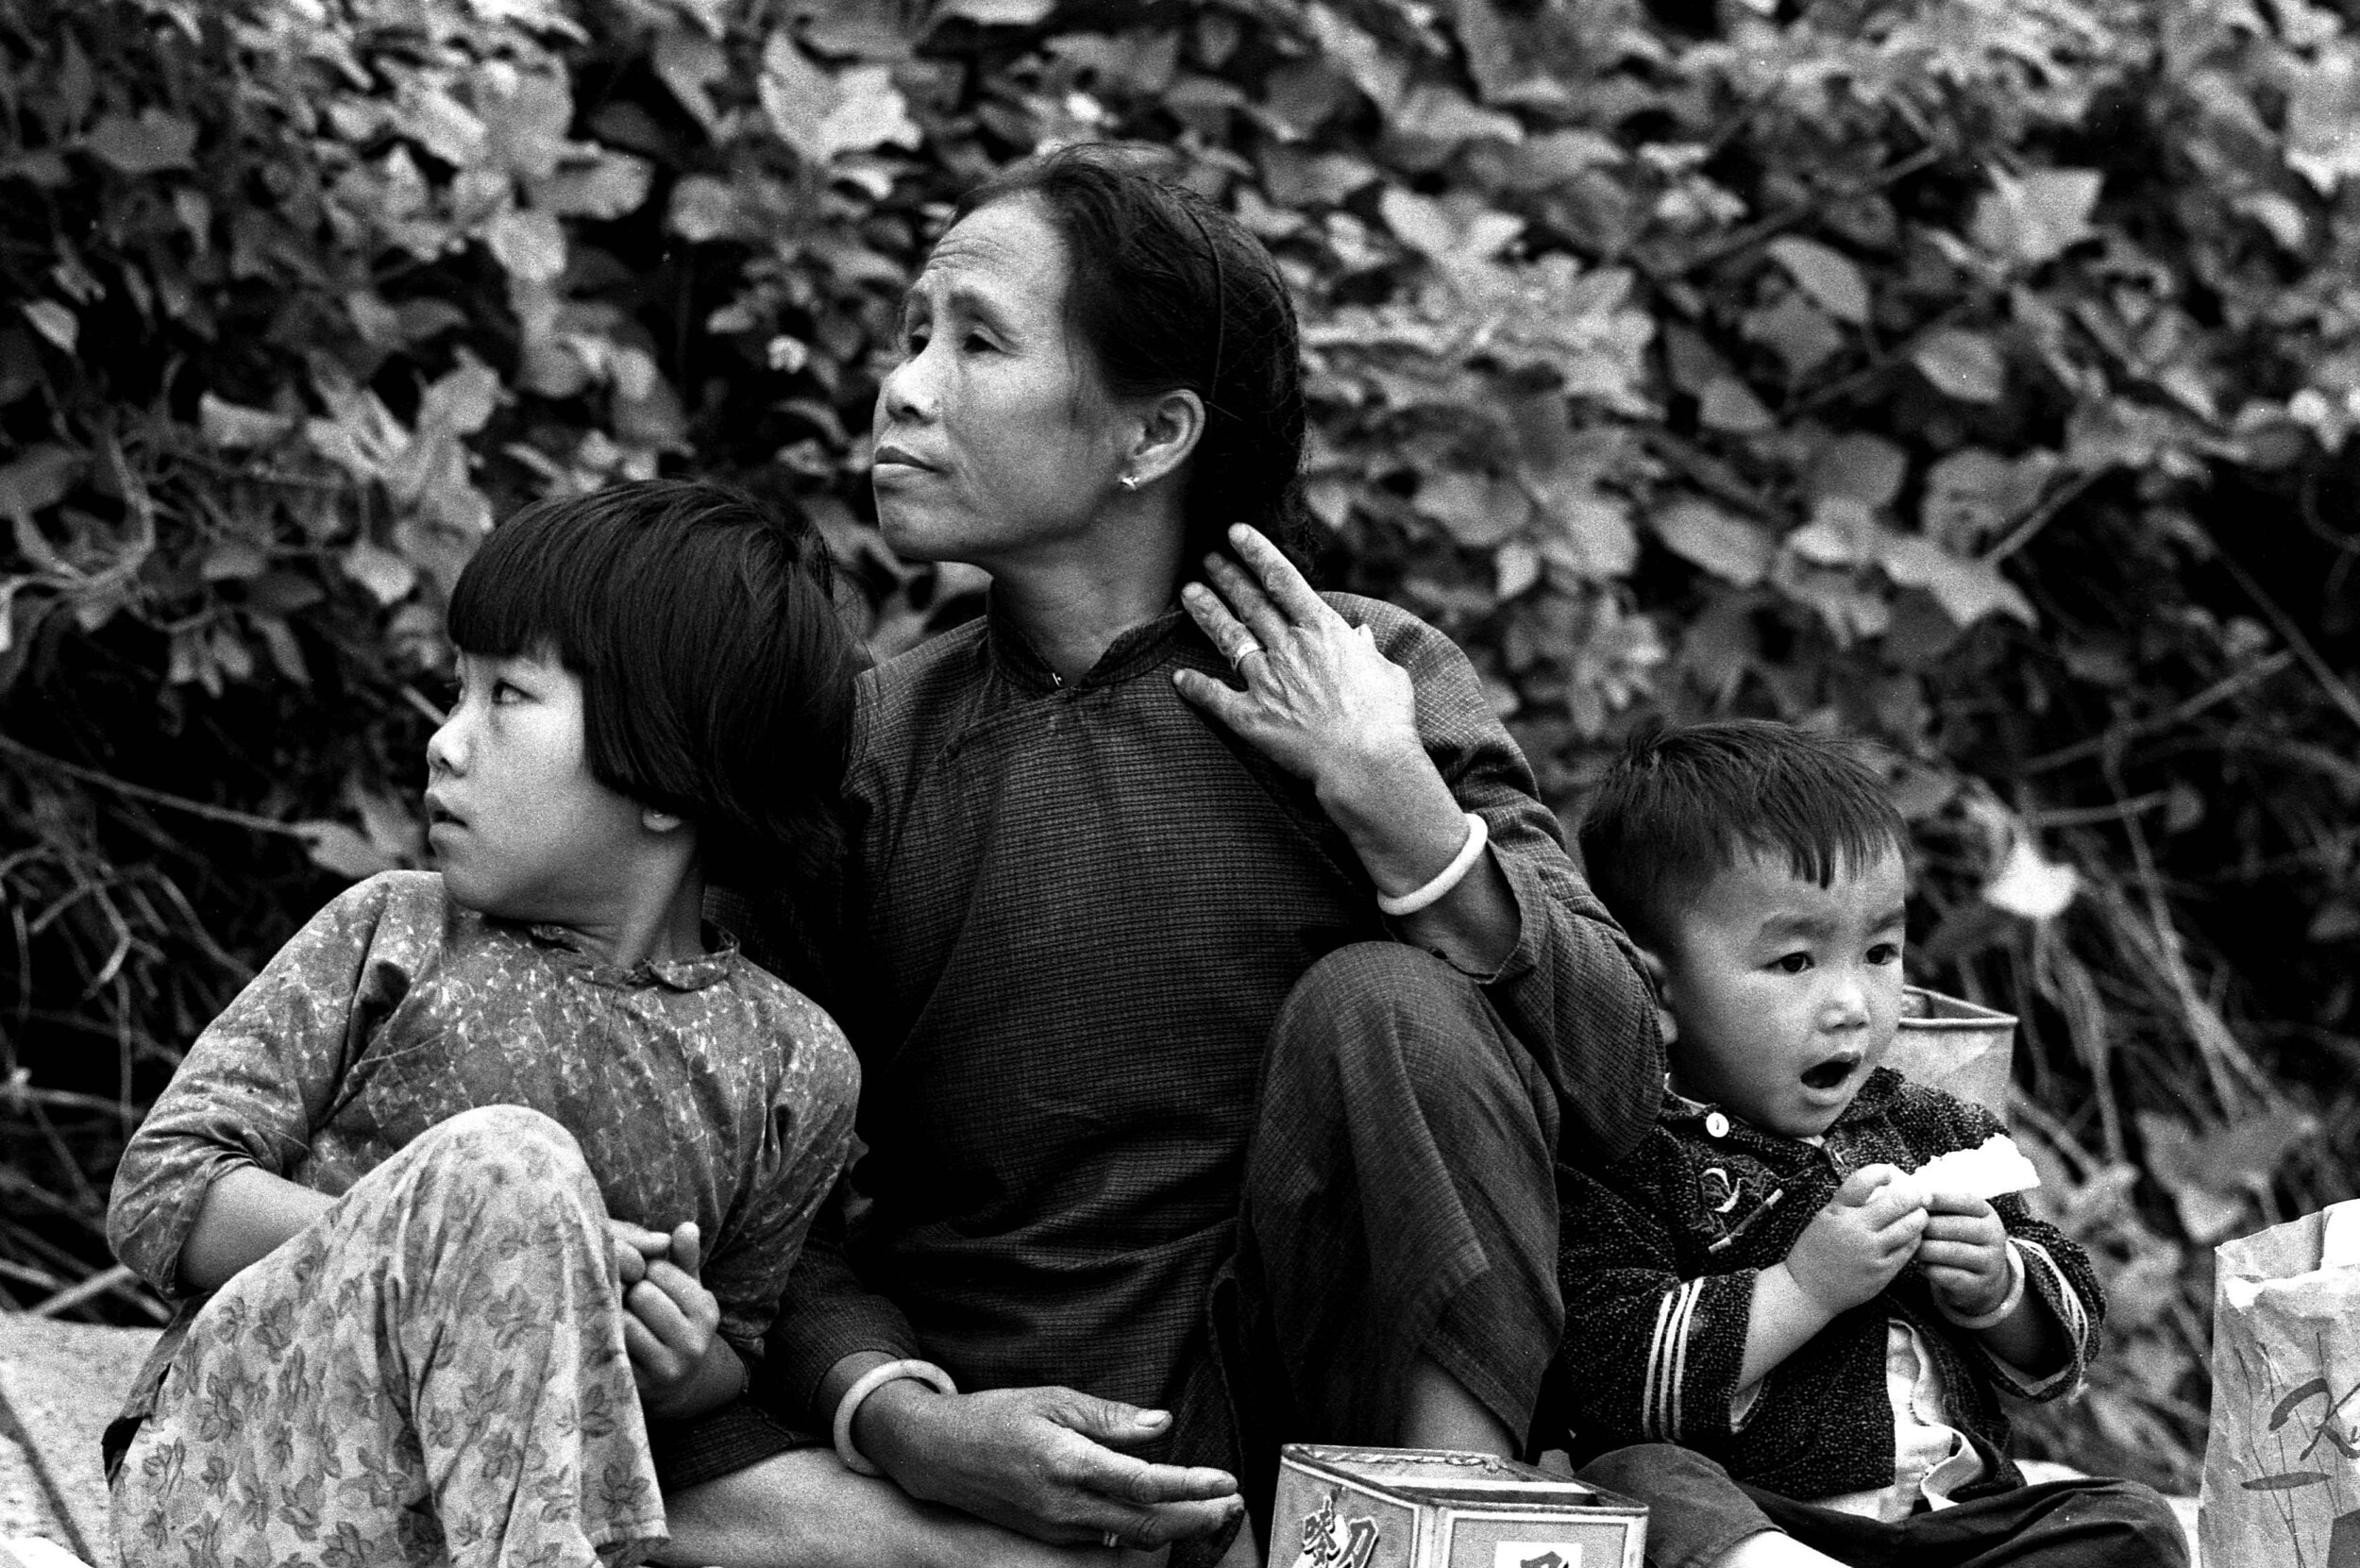 Family at the Tin Hau festival, Hong Kong